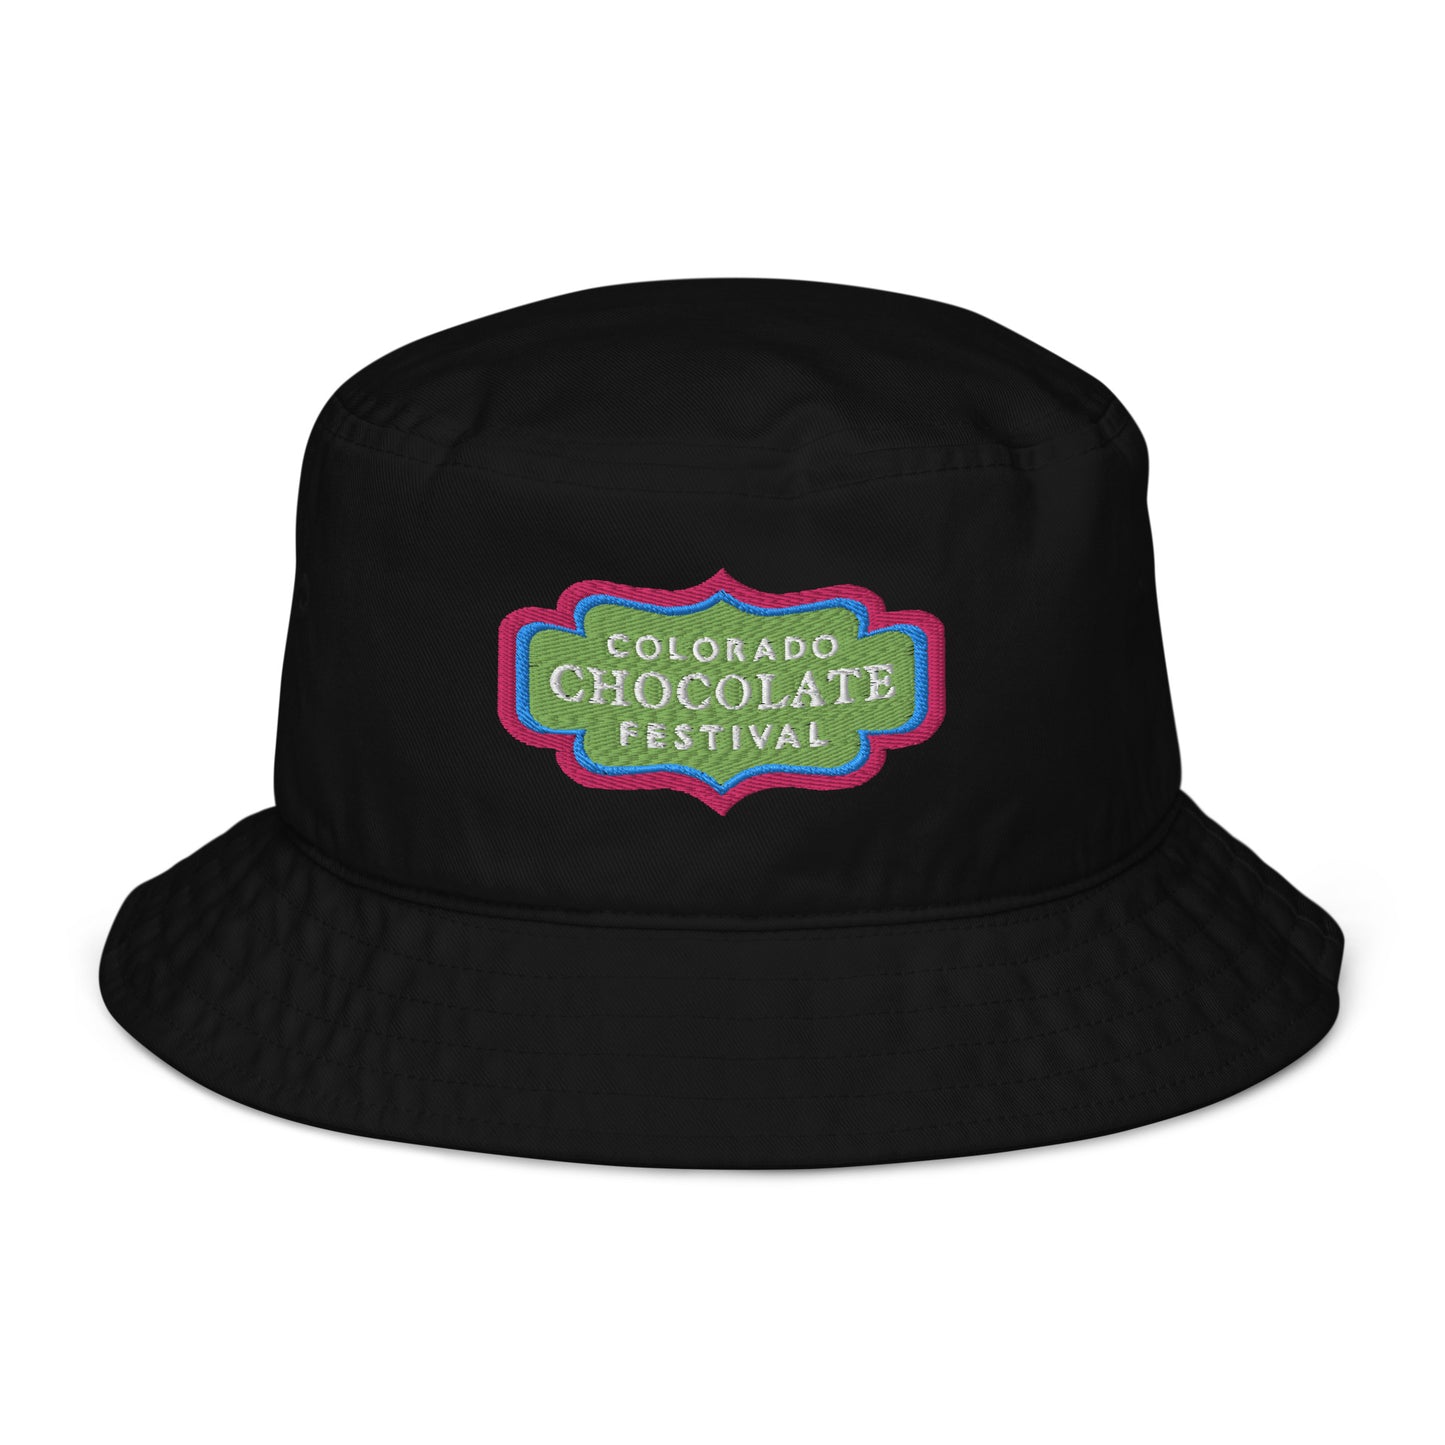 Chocolate Festifal Organic bucket hat